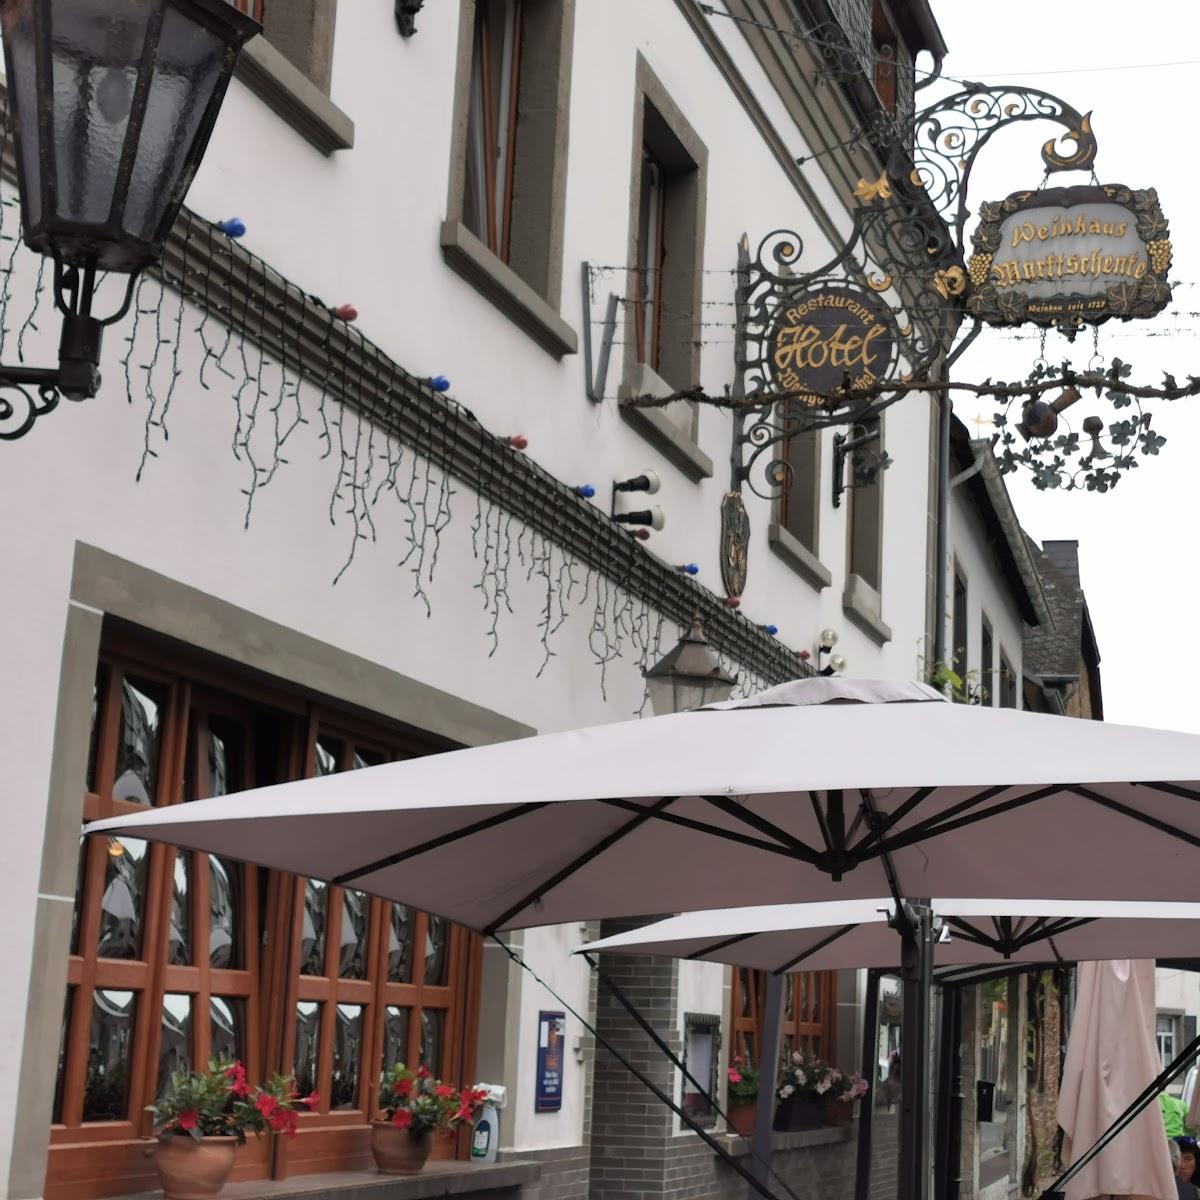 Restaurant "Hotel Weinhaus Marktschenke" in Winningen